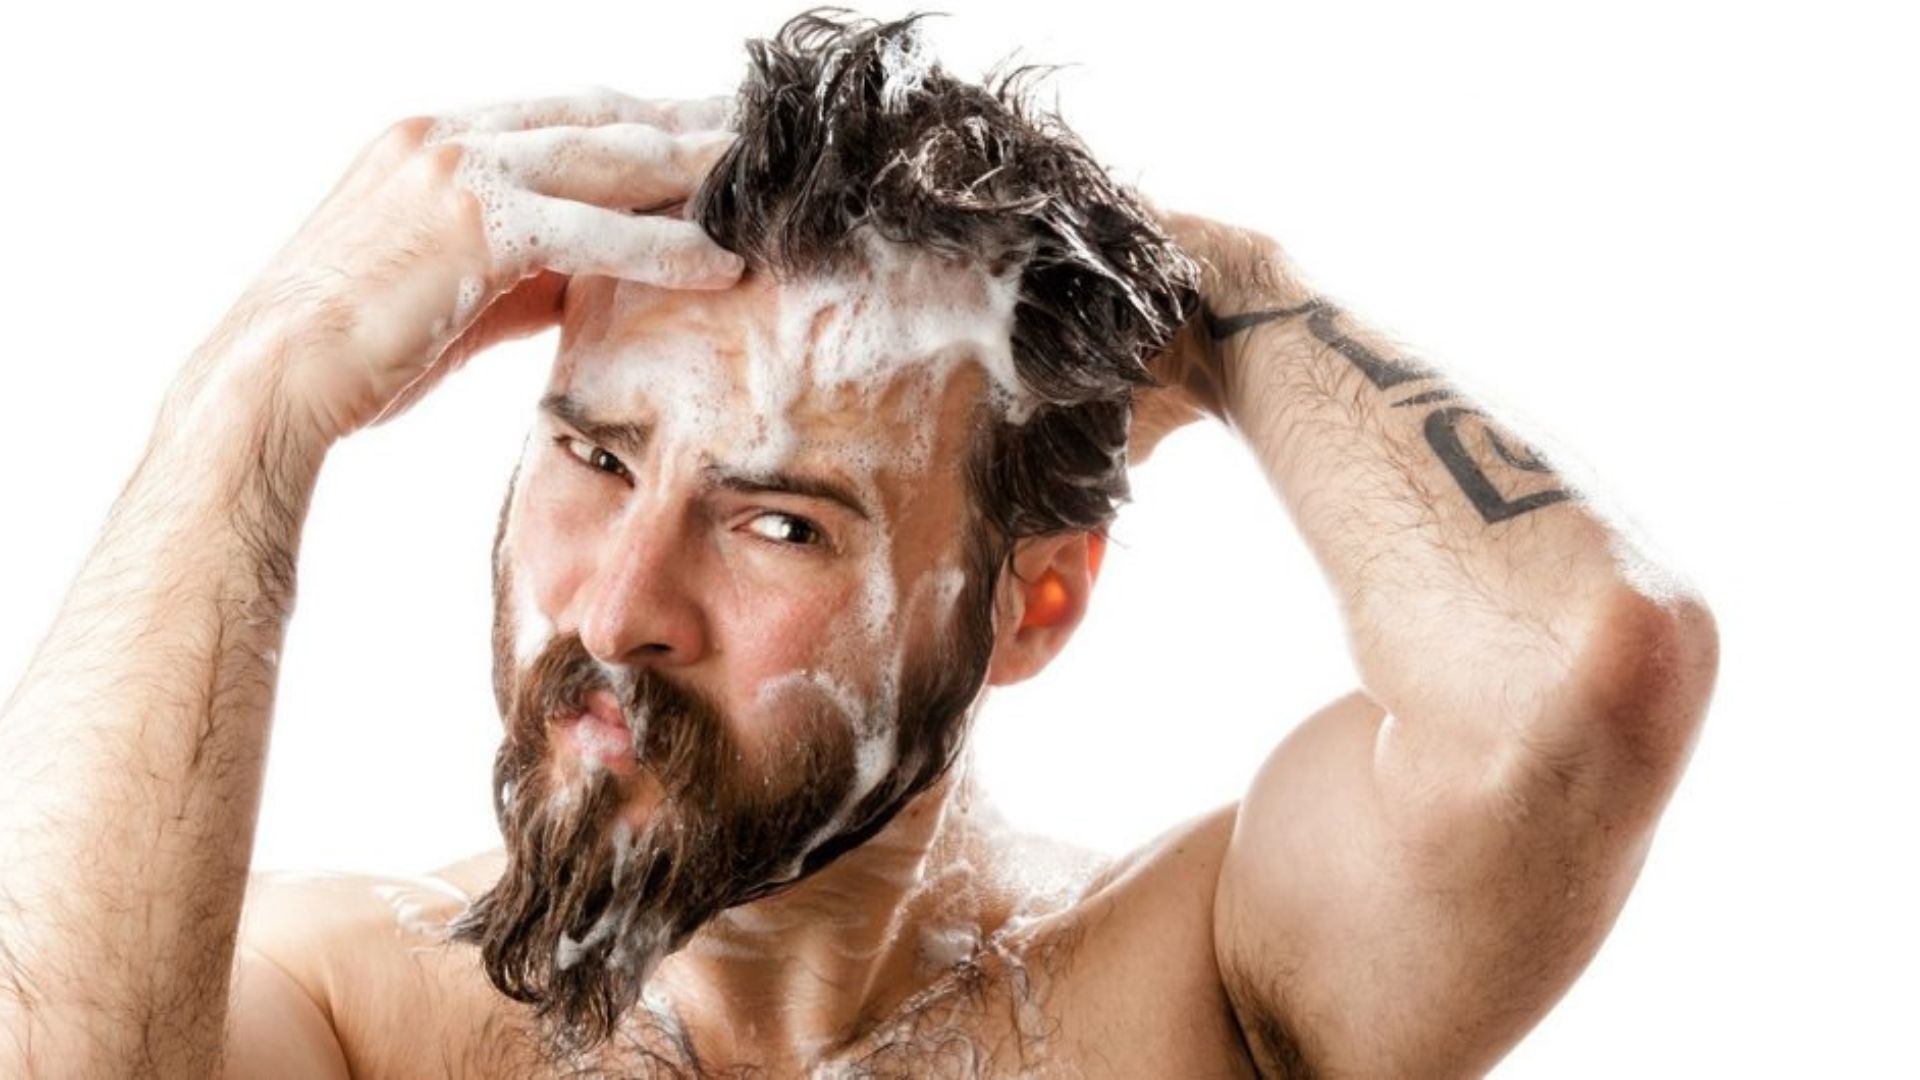 jaki szampon do brody brodaty blog